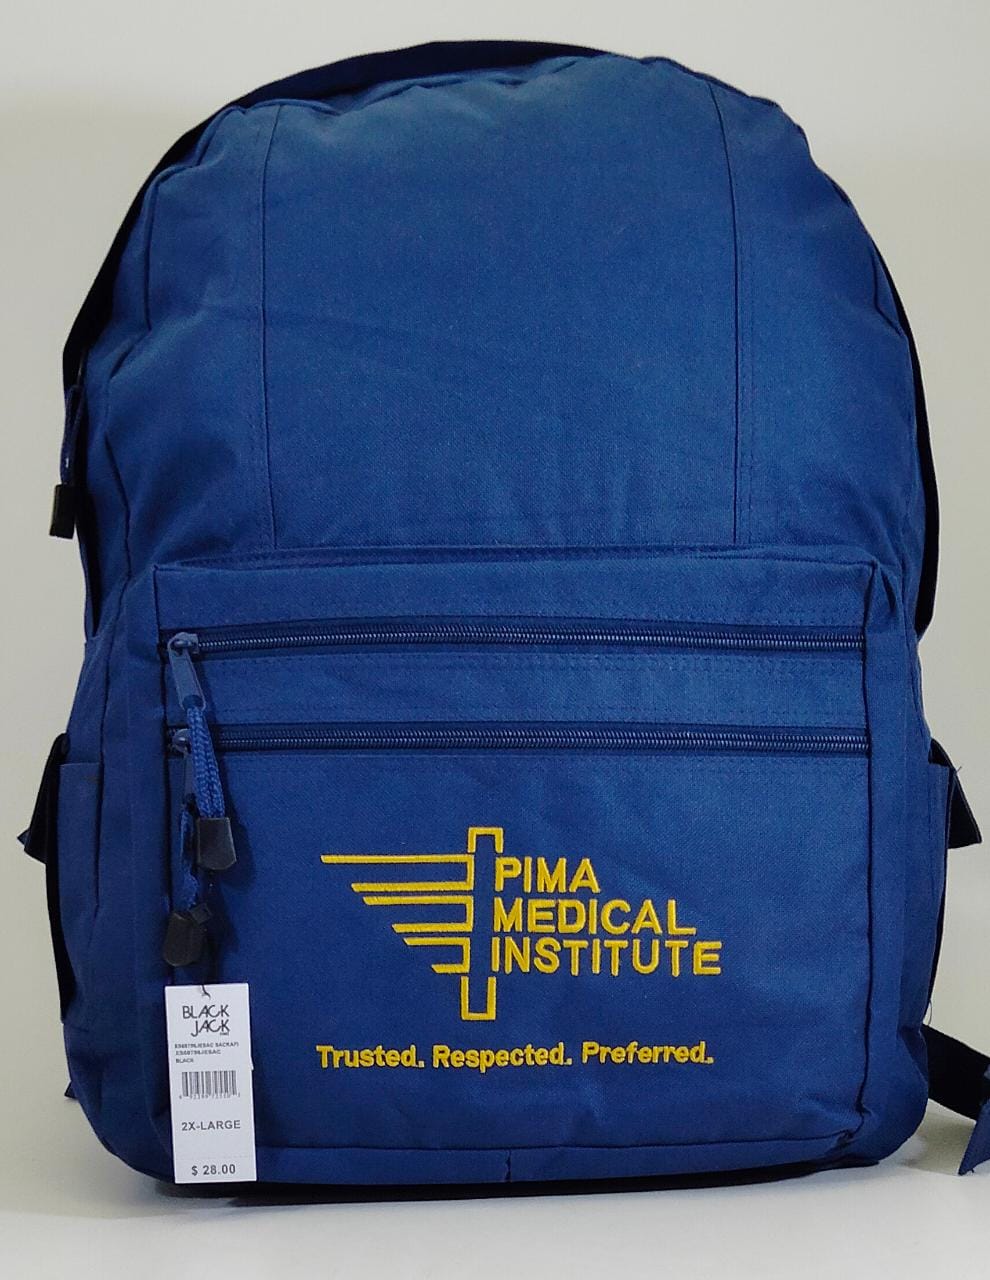 Pima medical institute Blue School Bag